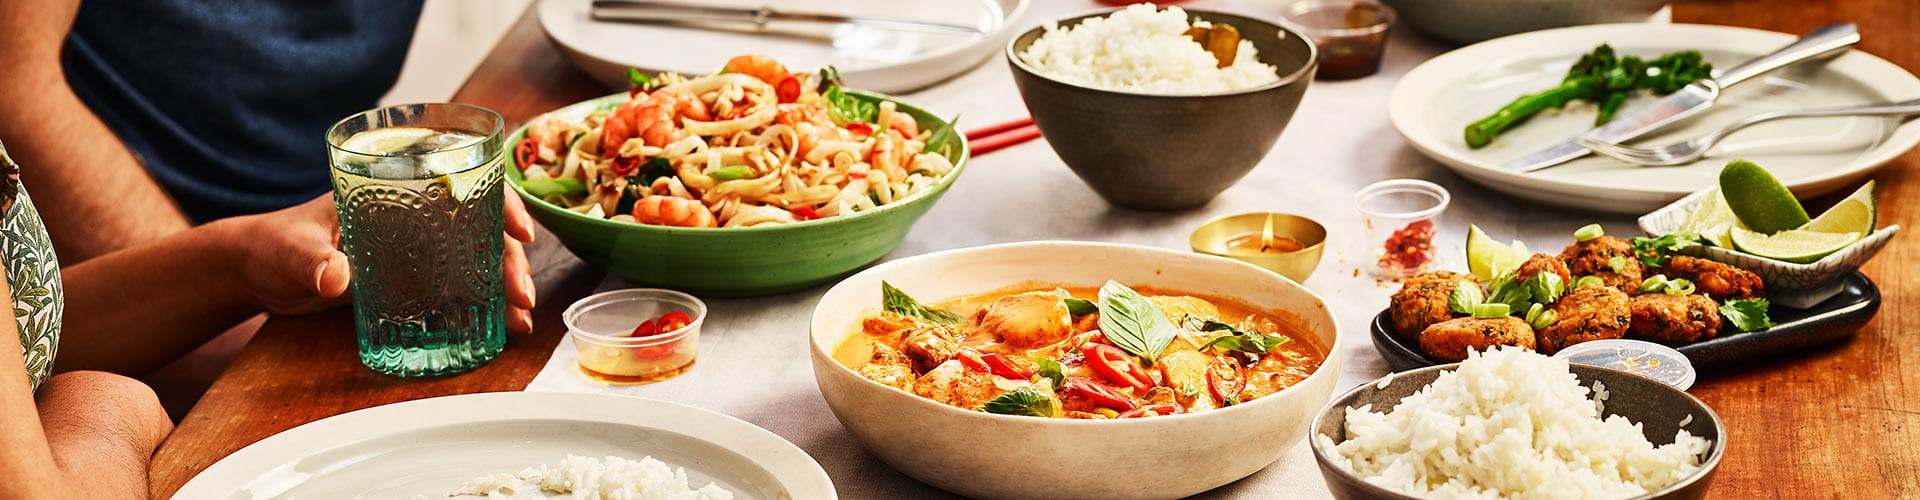 Variedad de platos saludables hechos al wok